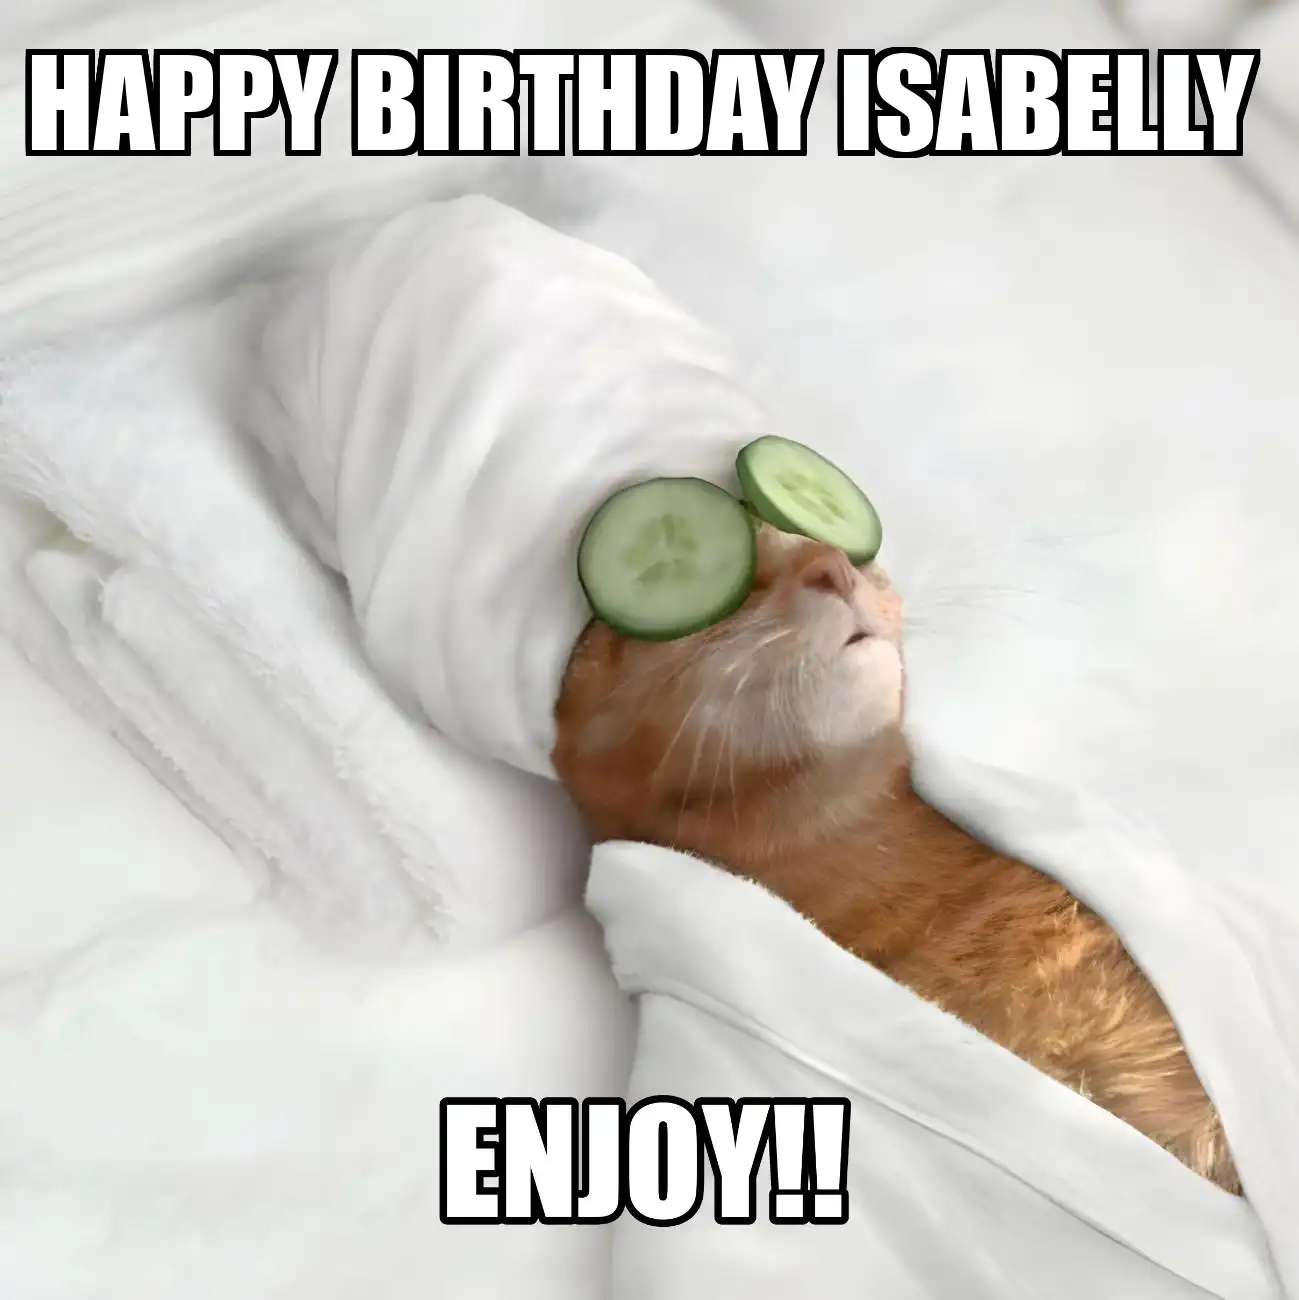 Happy Birthday Isabelly Enjoy Cat Meme